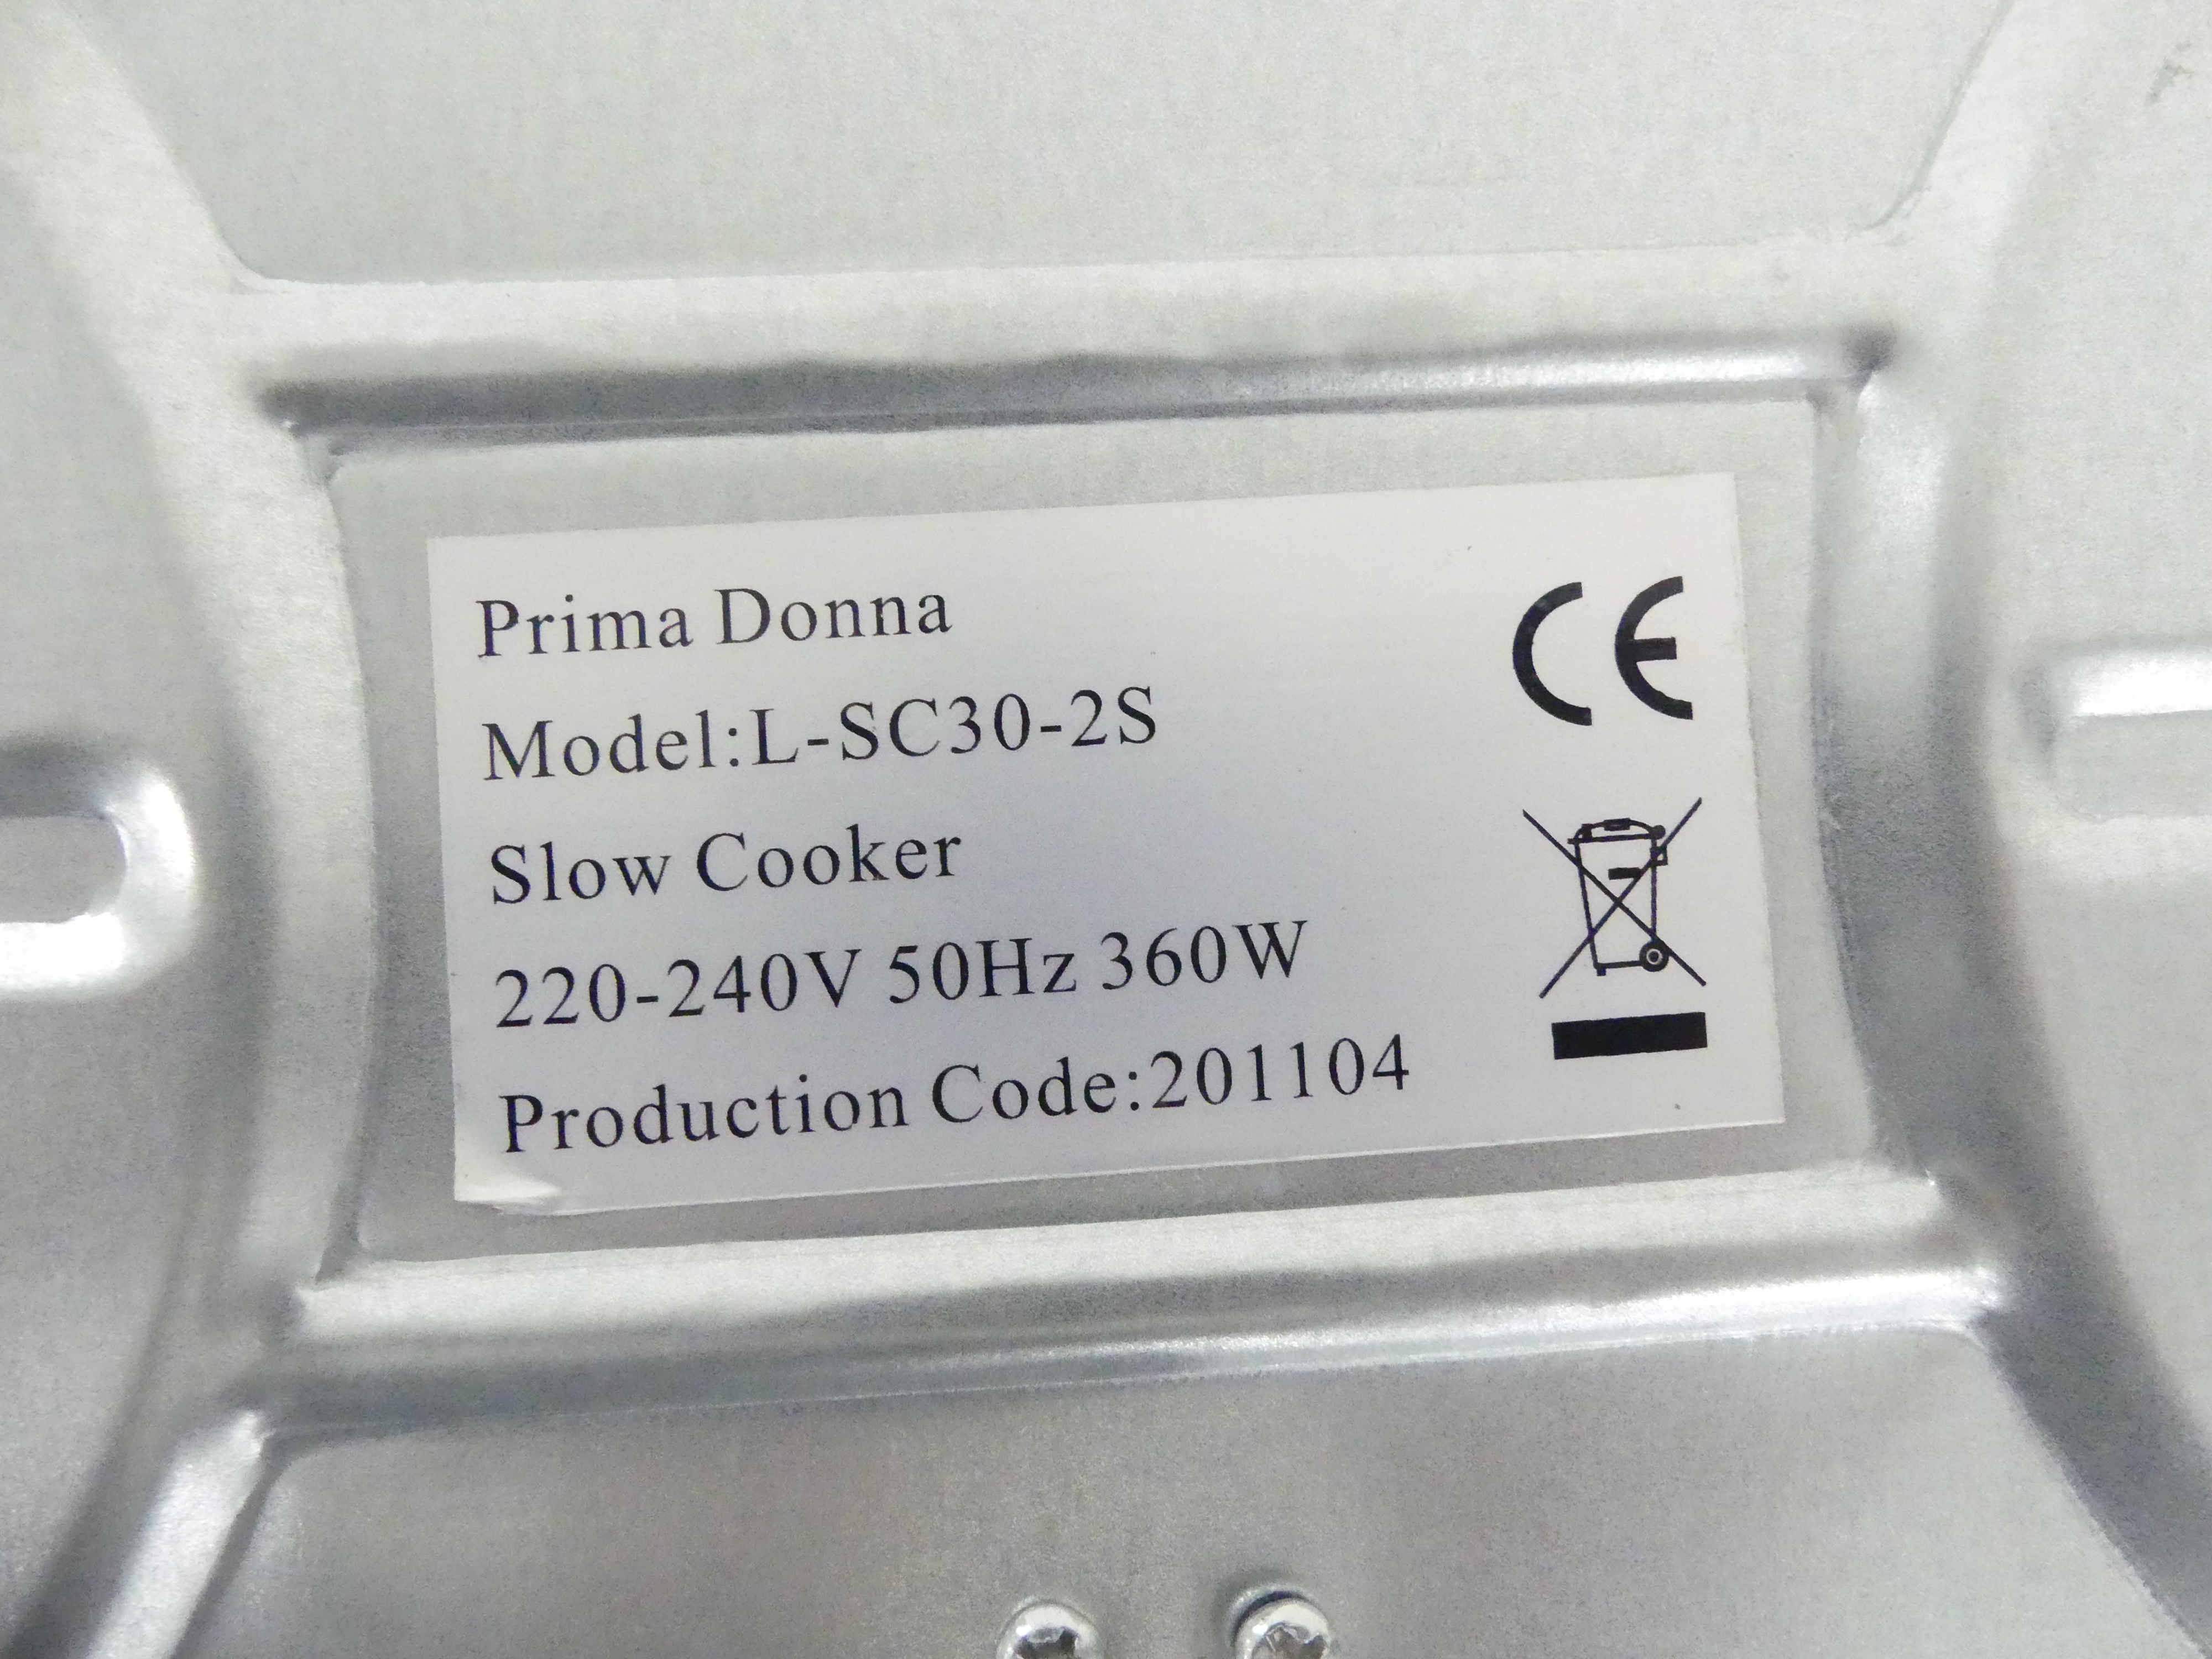 Prima Donna slowcooker L-SC30-2S